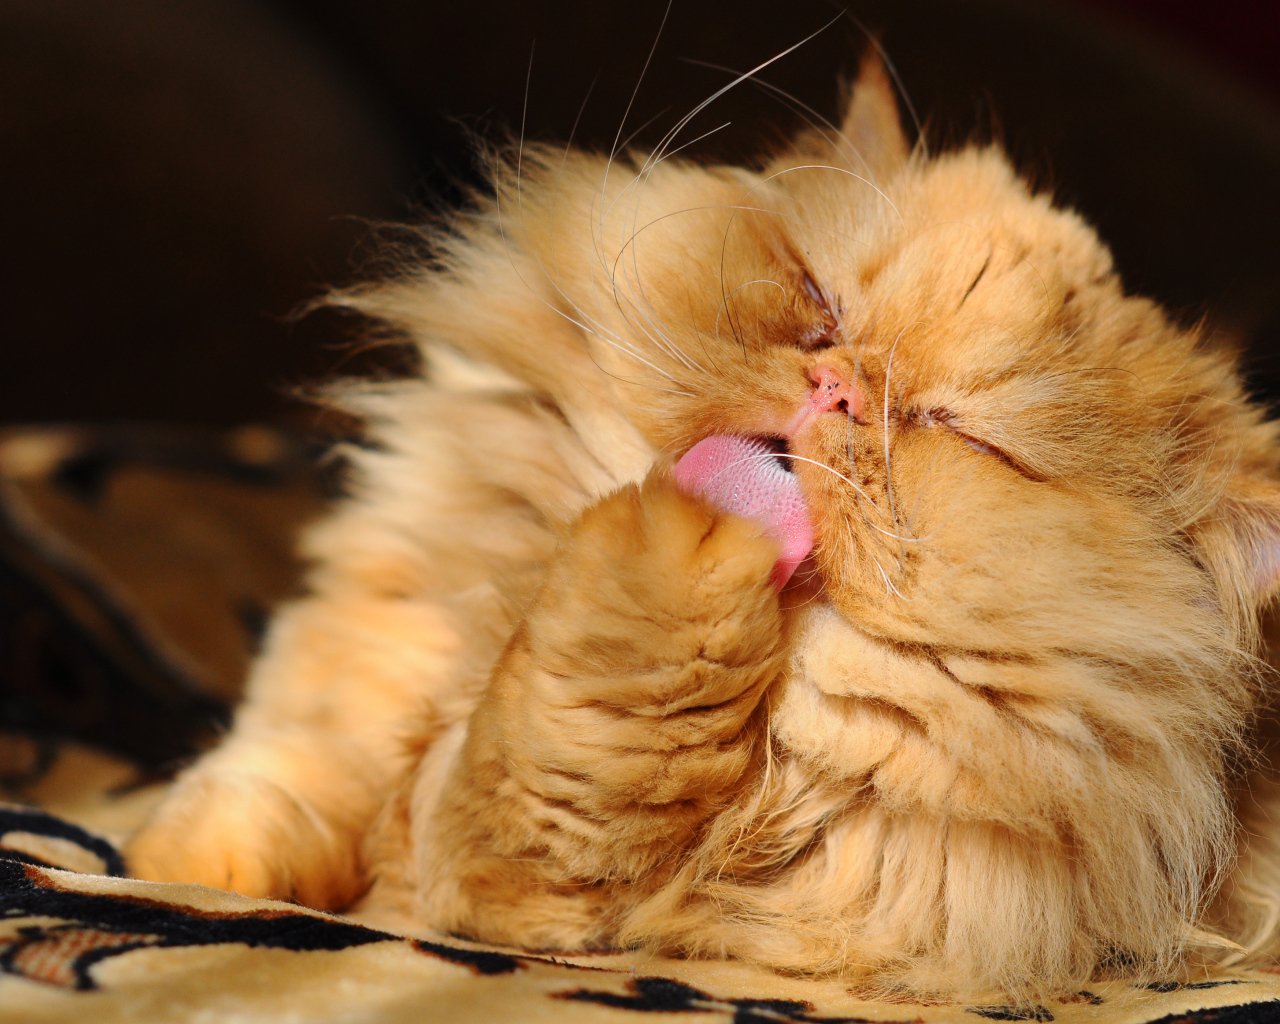 Пушистый рыжий персидский кот облизывает лапу